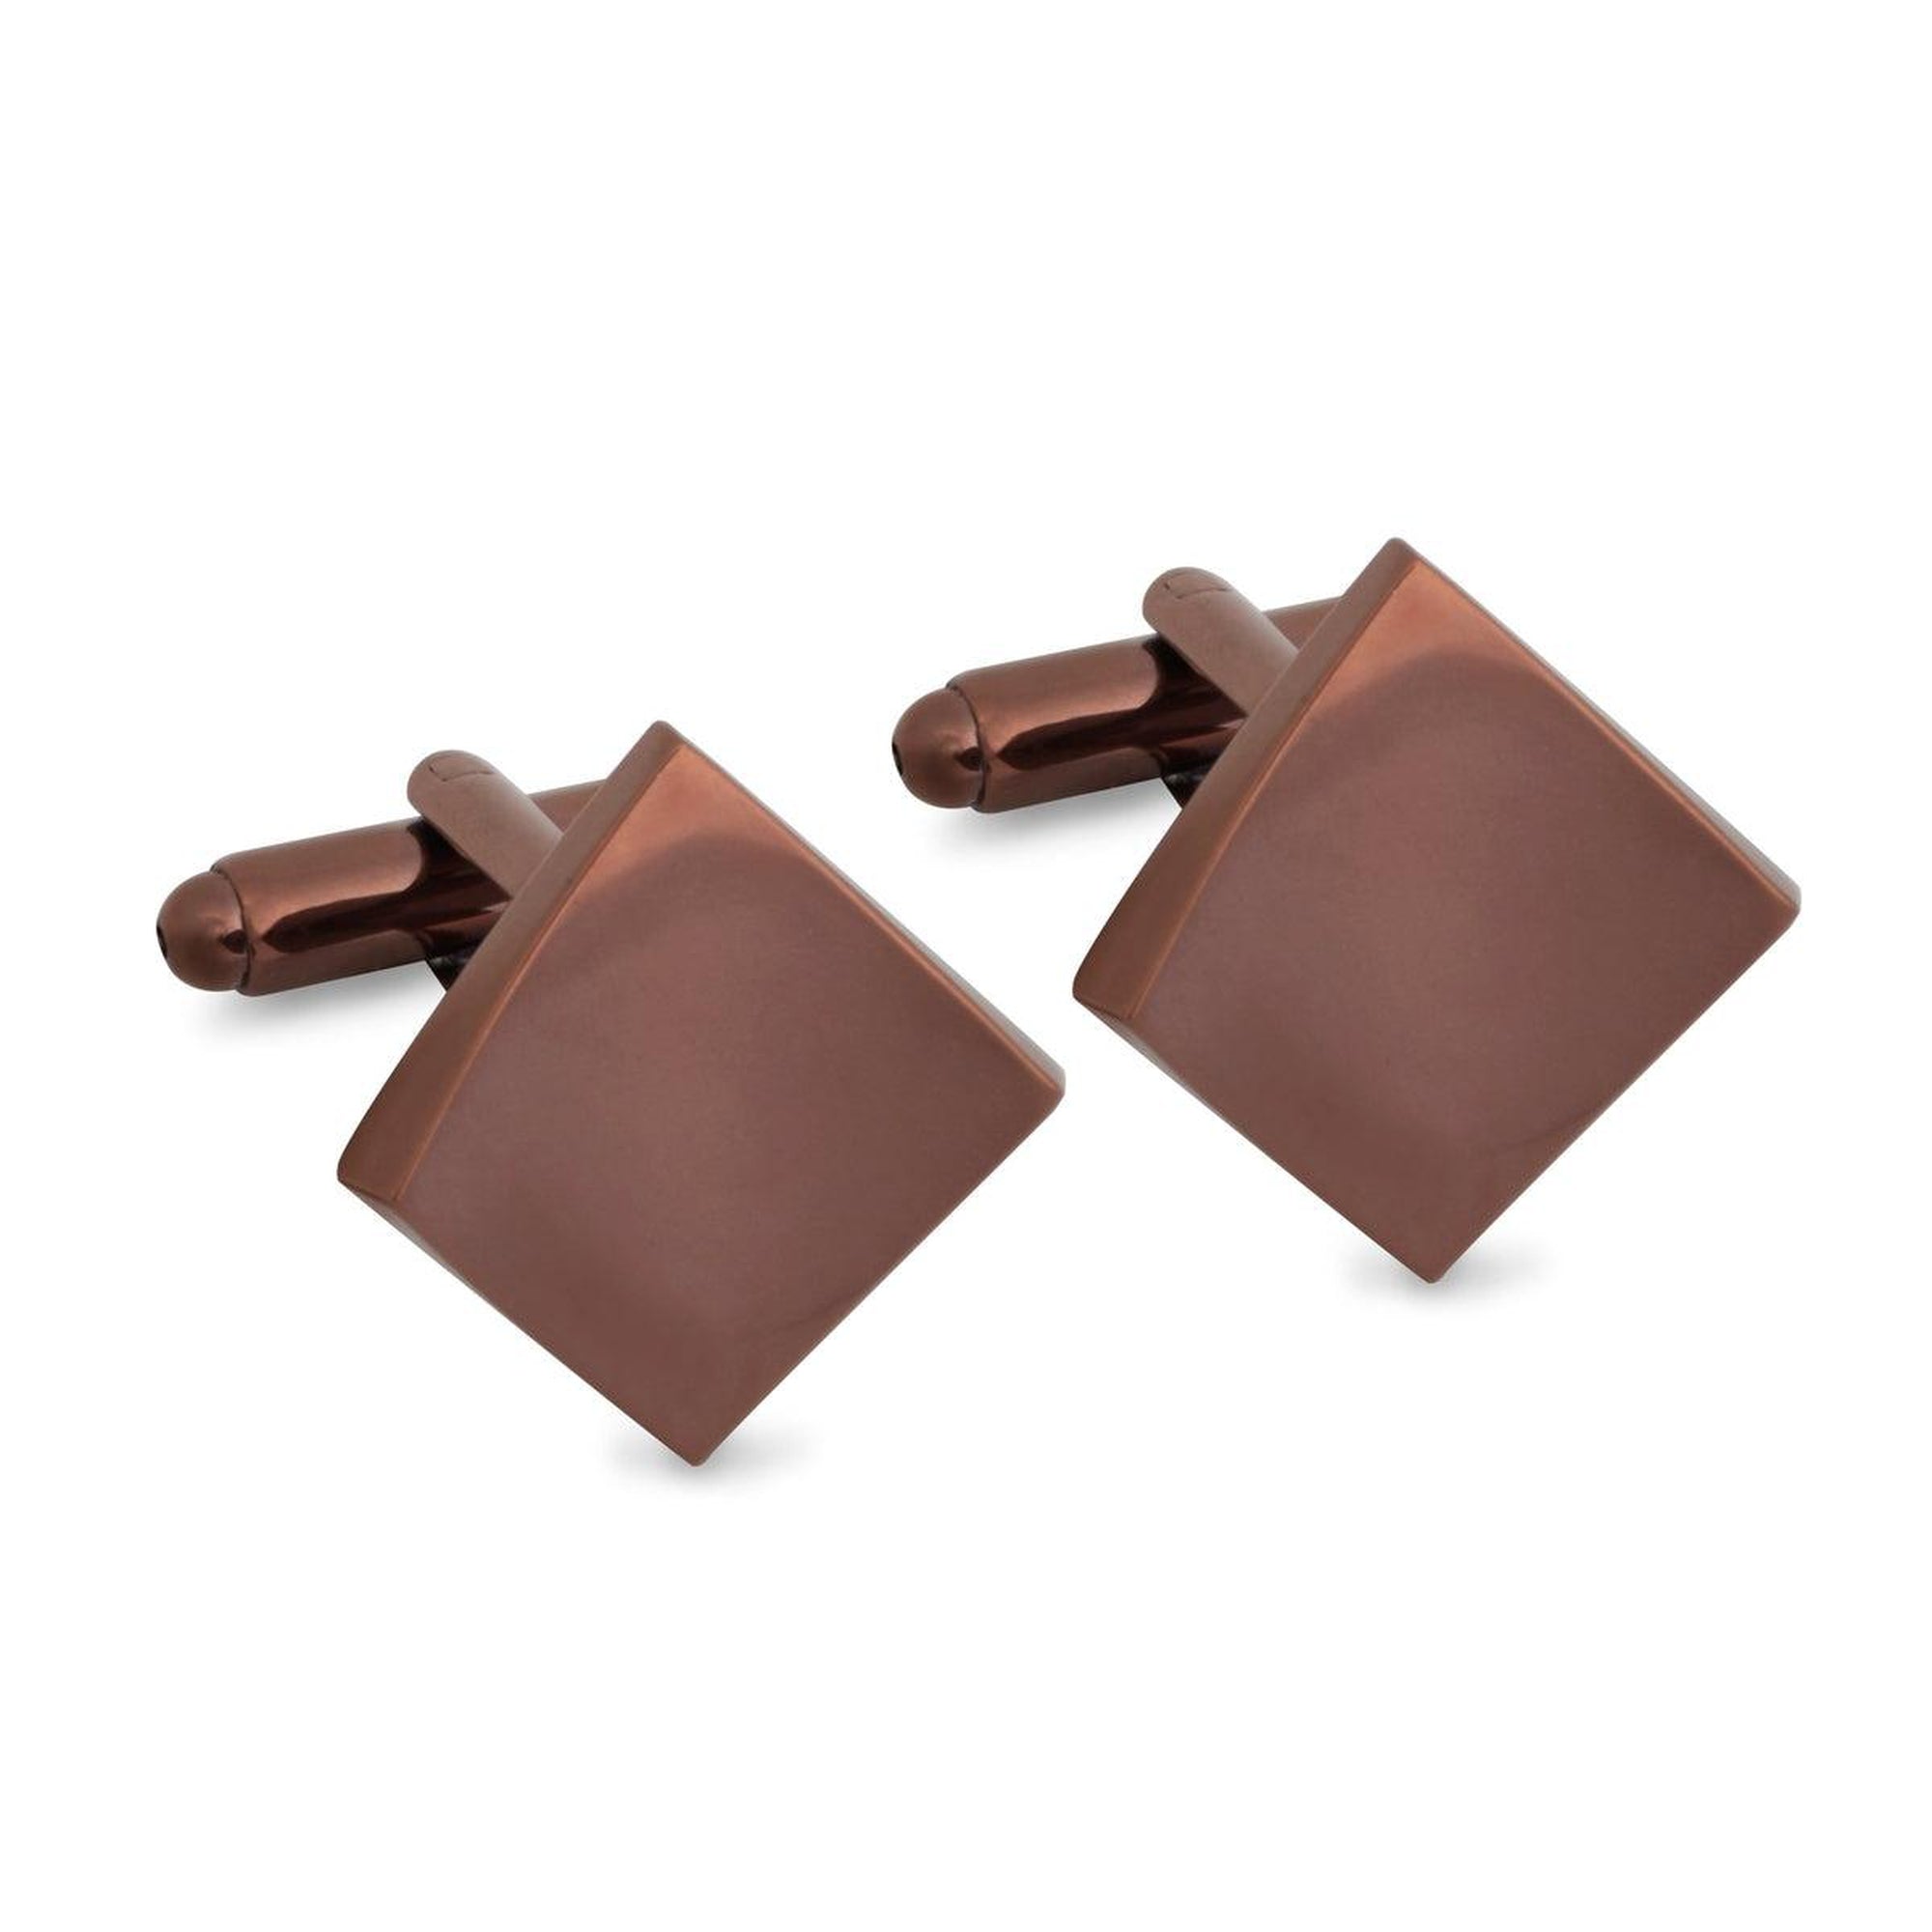 Concave Square Cufflinks in Copper-Cufflinks.com.sg